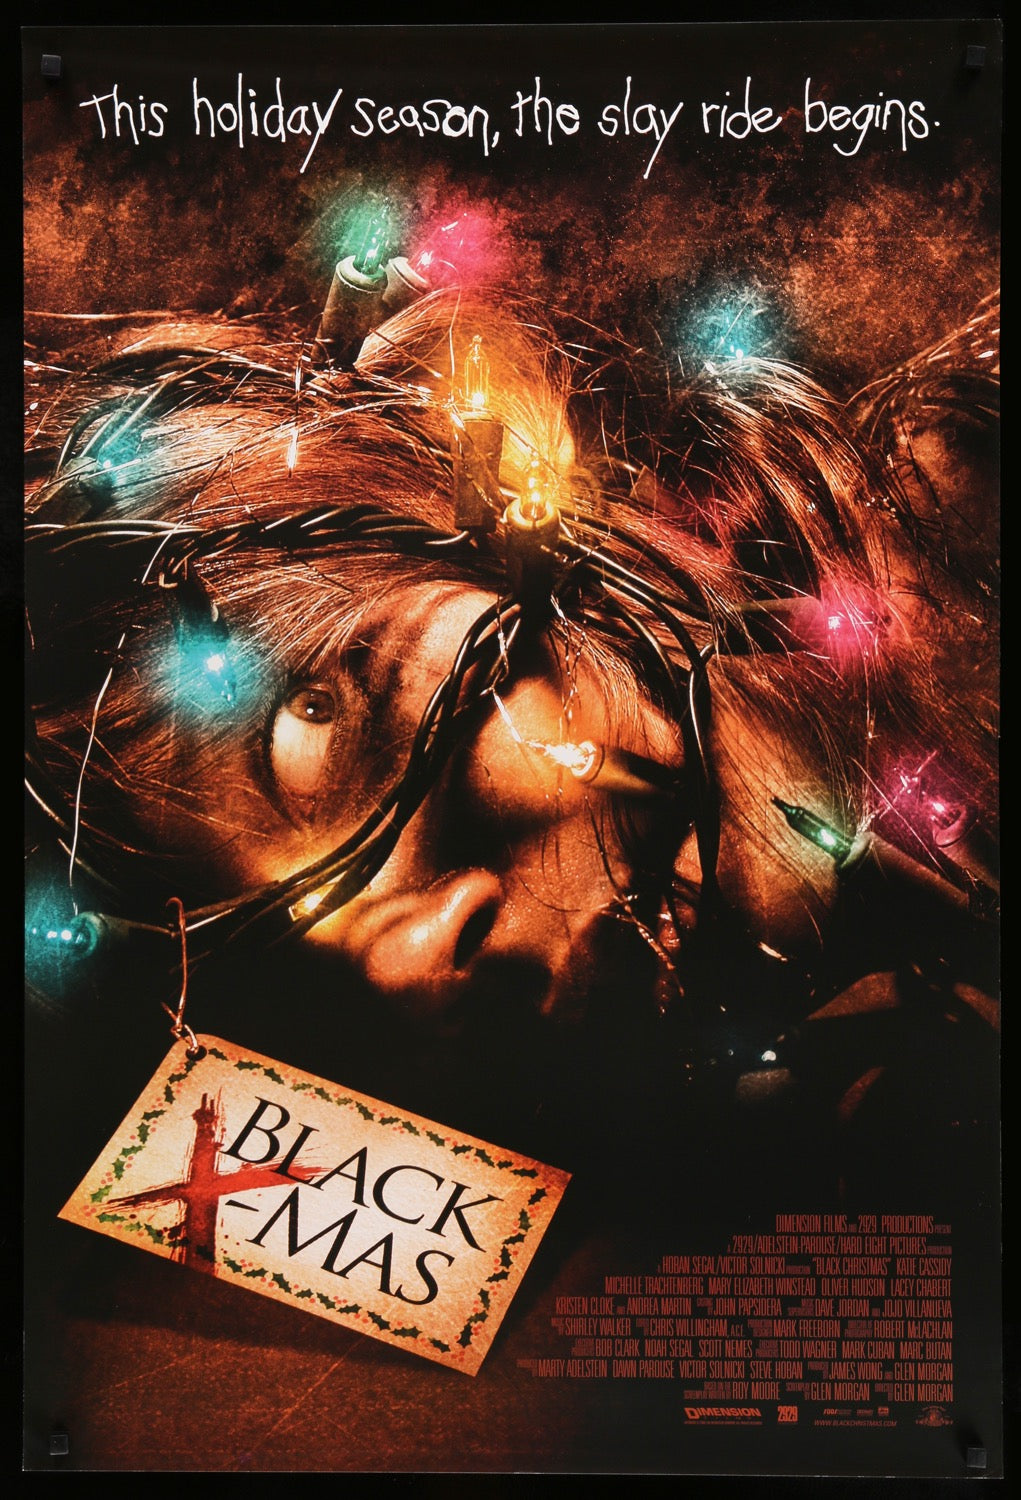 Black Christmas (2006) original movie poster for sale at Original Film Art